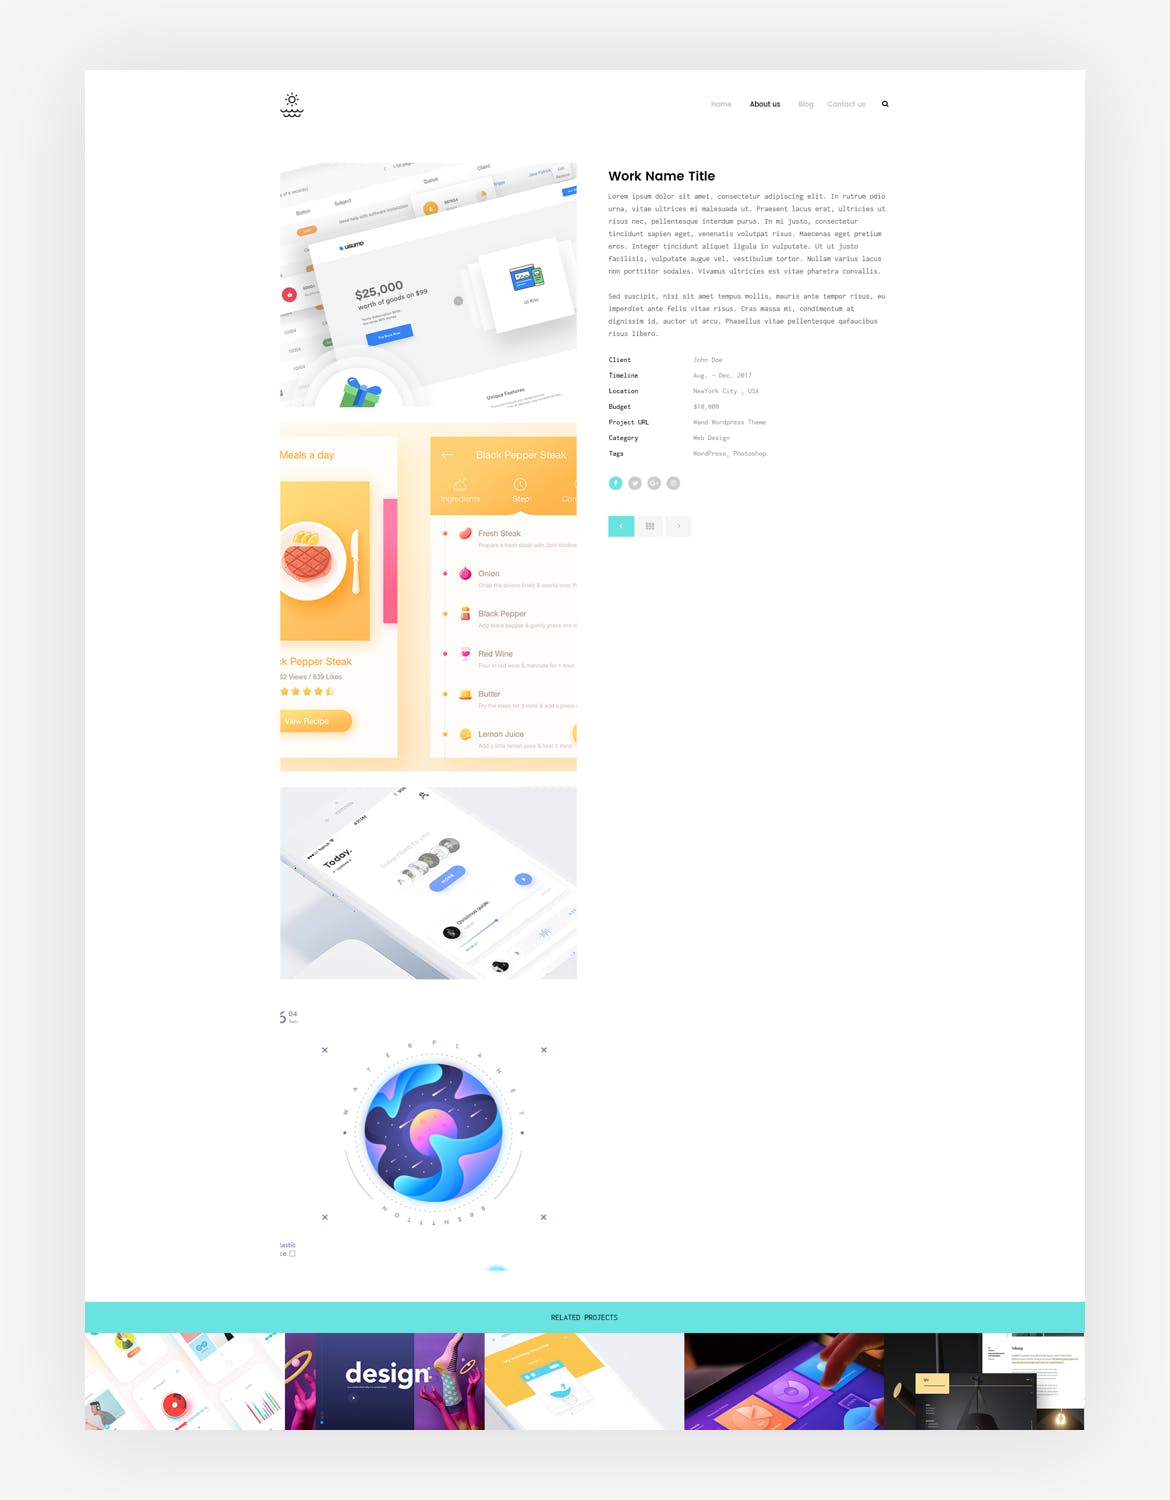 创意产品设计展示网站设计PSD模板下载 Agency portfolio Psd Template插图(2)